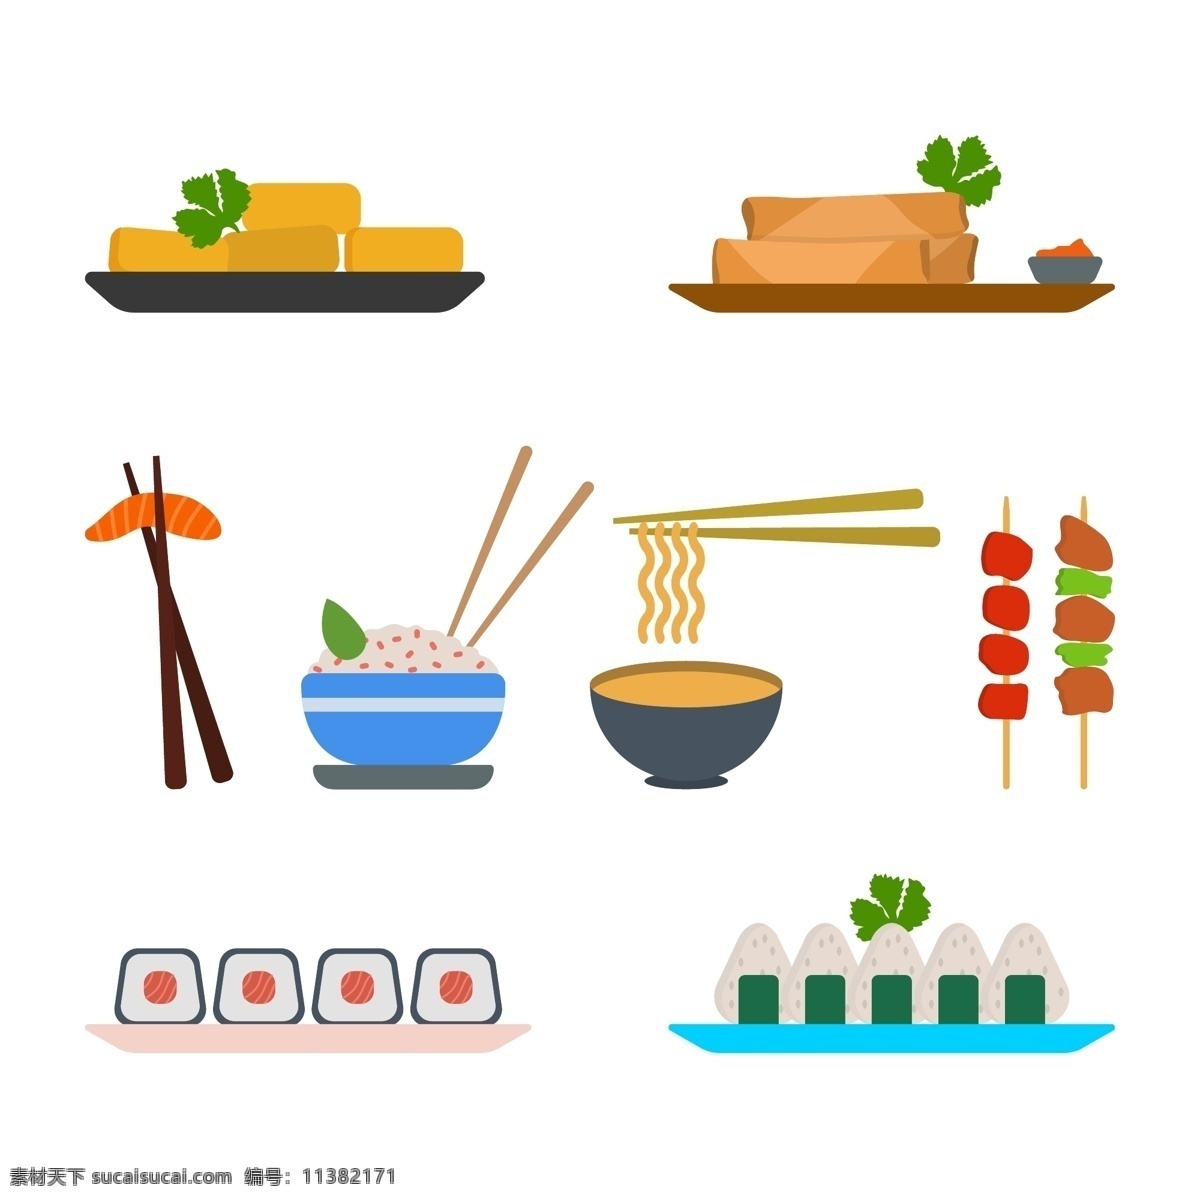 手绘 矢量 亚洲 食物 饭团 米饭 面条 日本食物 日式料理 矢量素材 手绘插画 手绘食物 寿司 亚洲食物